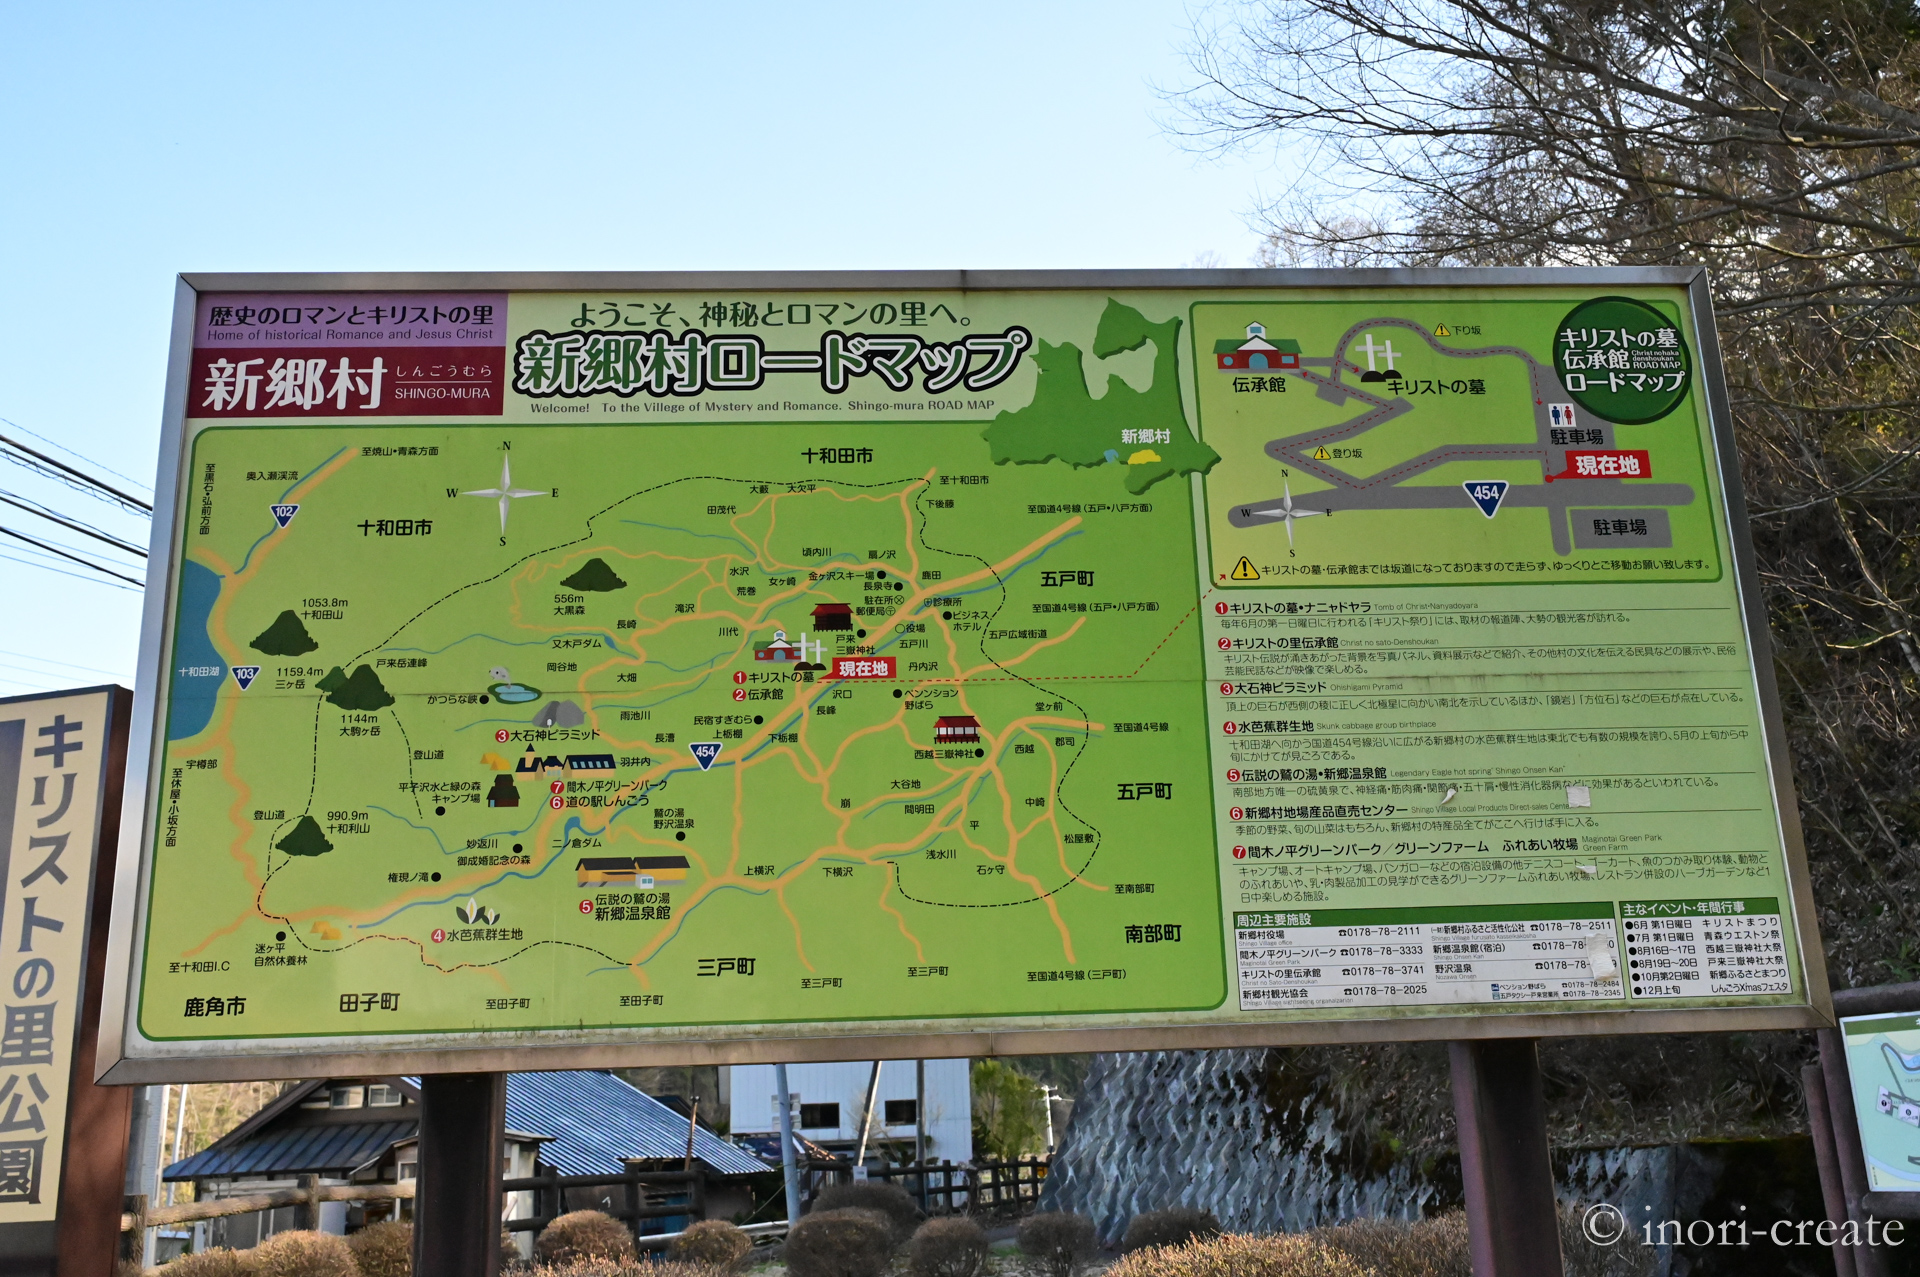 青森県新郷村キリストの里公園入口にある周辺地図